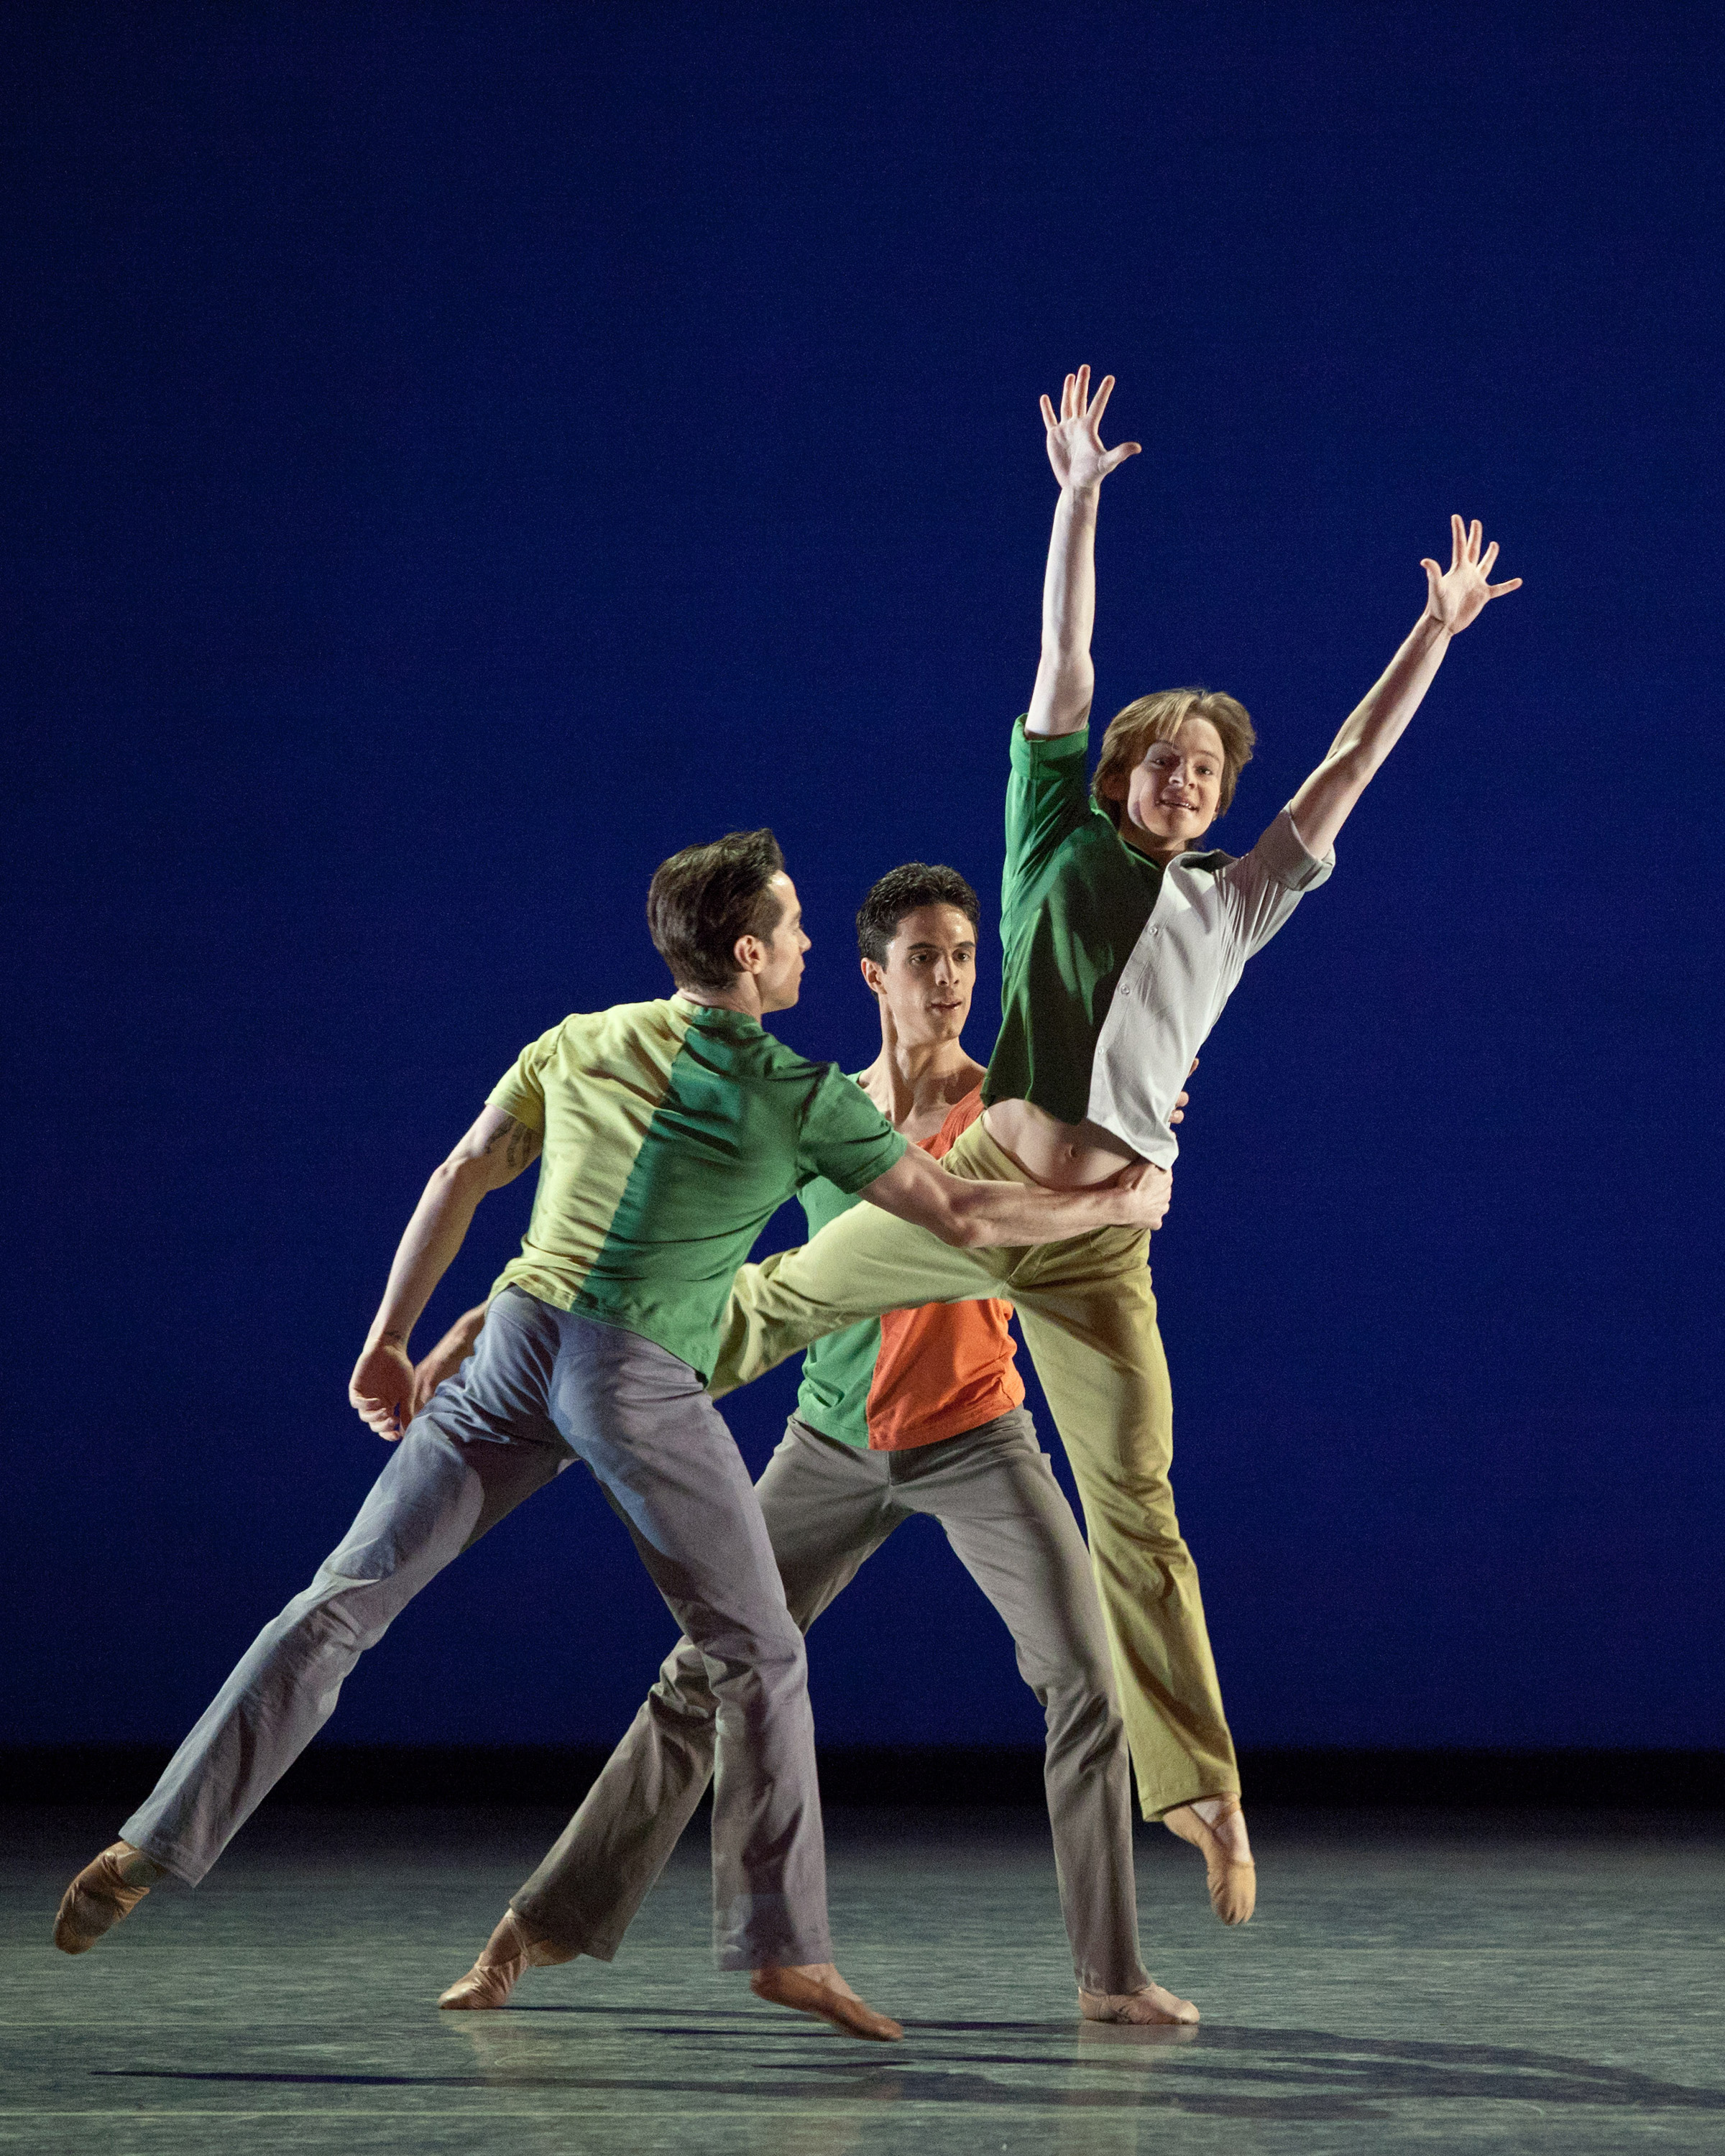 Benjamin Millepied presentó “Troika”, un trío en el que los bailarines hacen travesuras en escena. Foto: MIRA. Gentileza ABT.